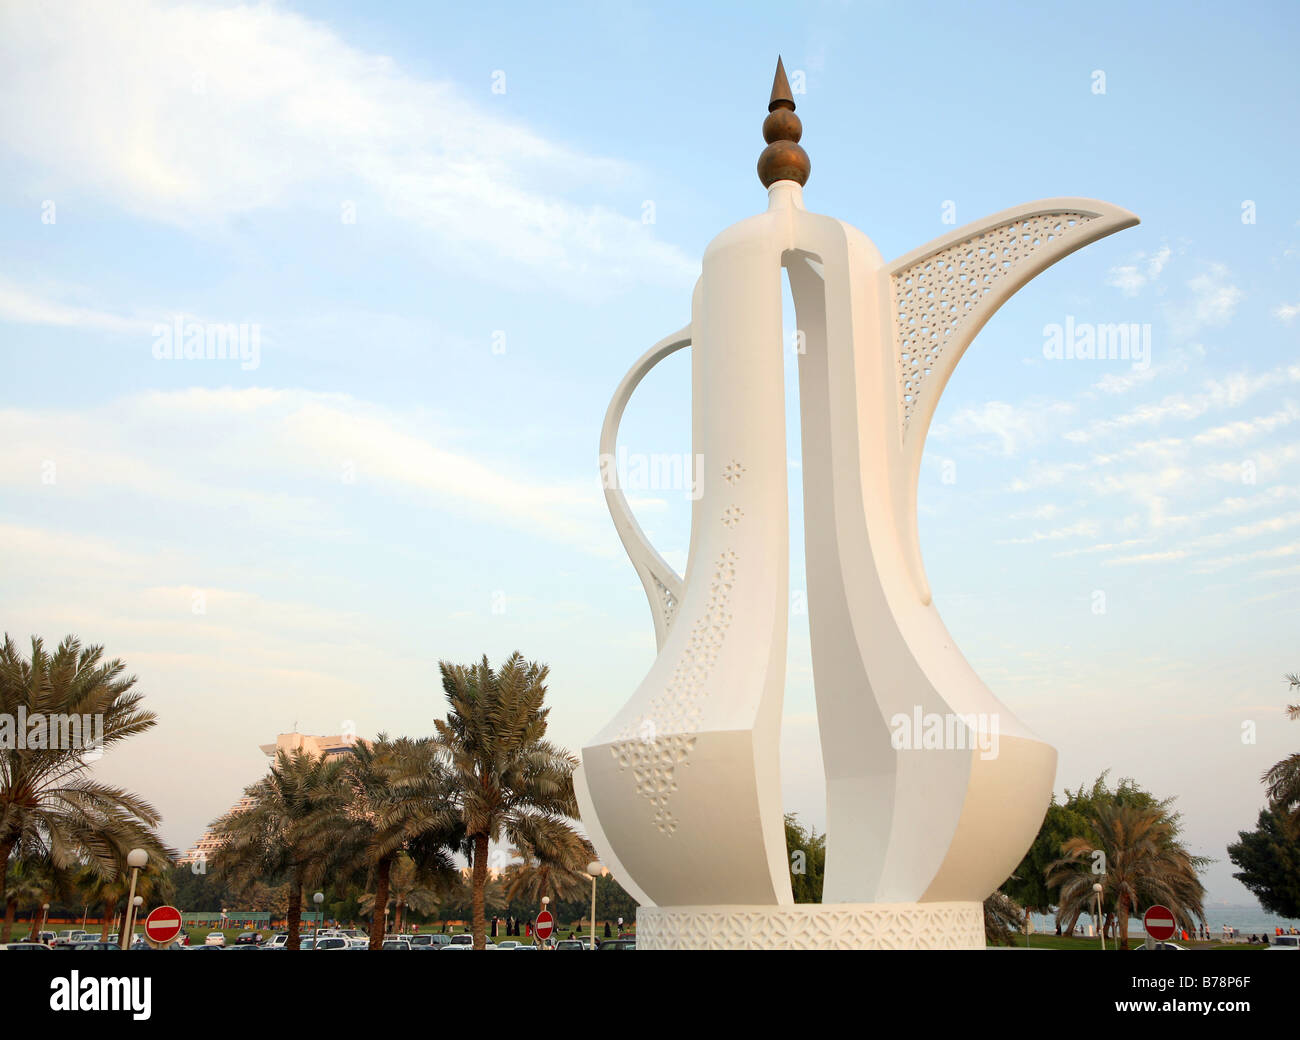 The 'Dallah' coffee-pot monument on the Corniche in Doha,Qatar. Stock Photo